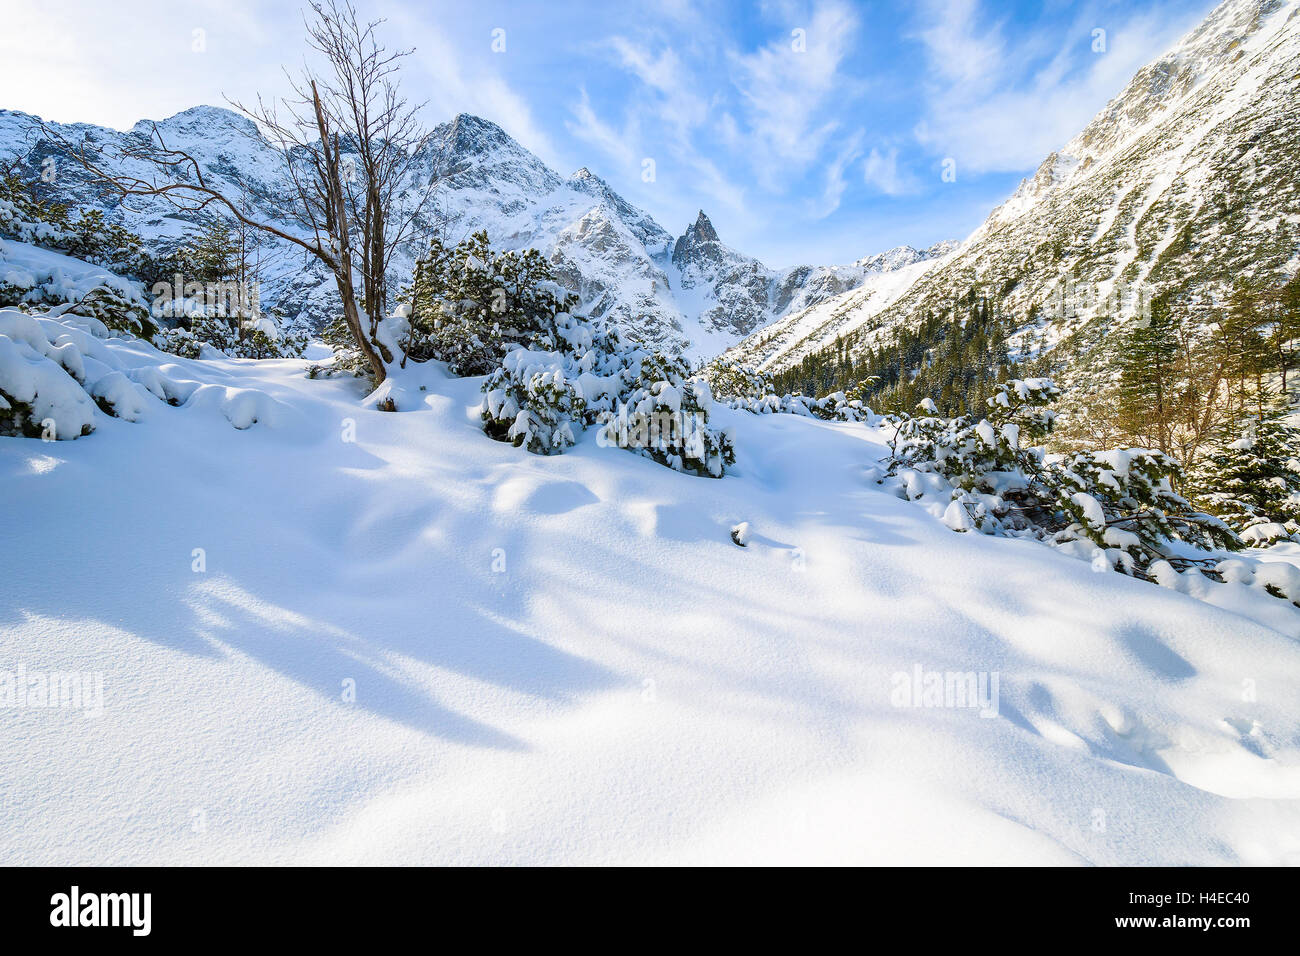 Les chutes de neige fraîche près du lac Morskie Oko gelé en hiver, les montagnes Tatras, Pologne Banque D'Images